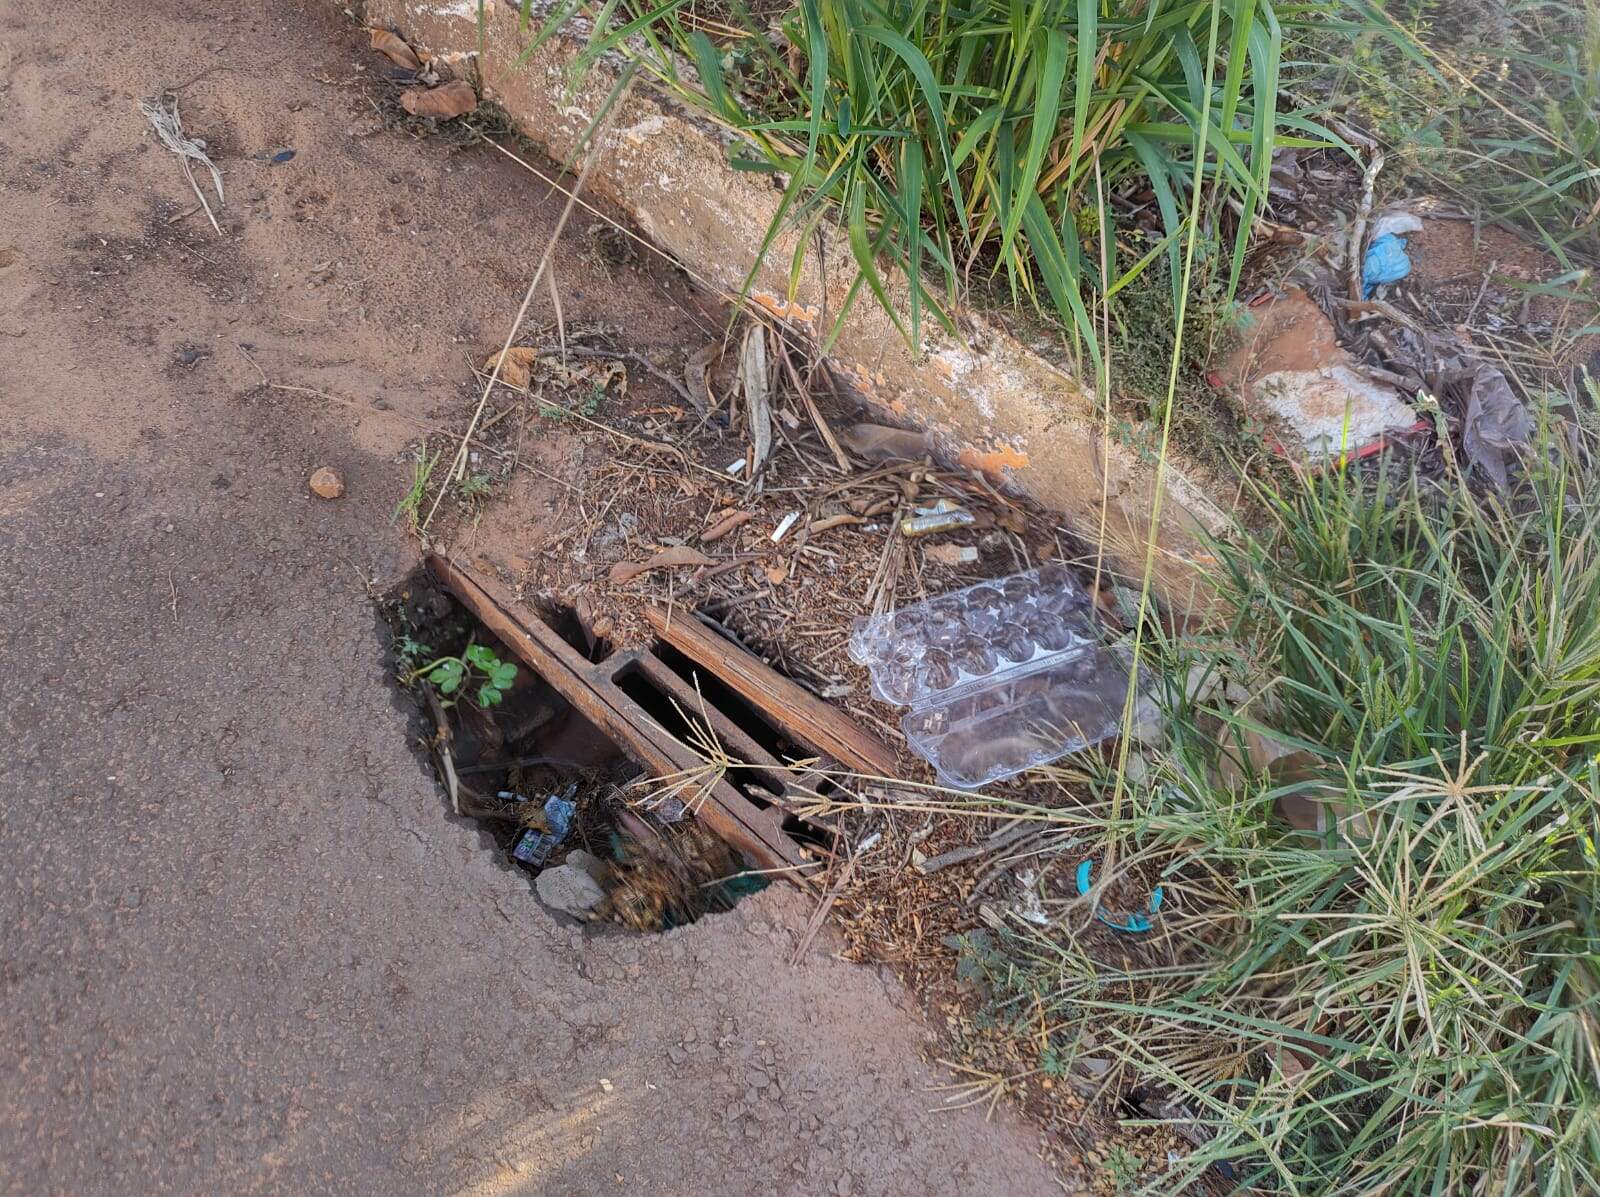 whatsapp image 2022 02 21 at 11.31.40 - Moradores do bairro Aero Rancho reclamam de ruas sujas e com acúmulo de lixo: 'Estão aparecendo muitos escorpiões'